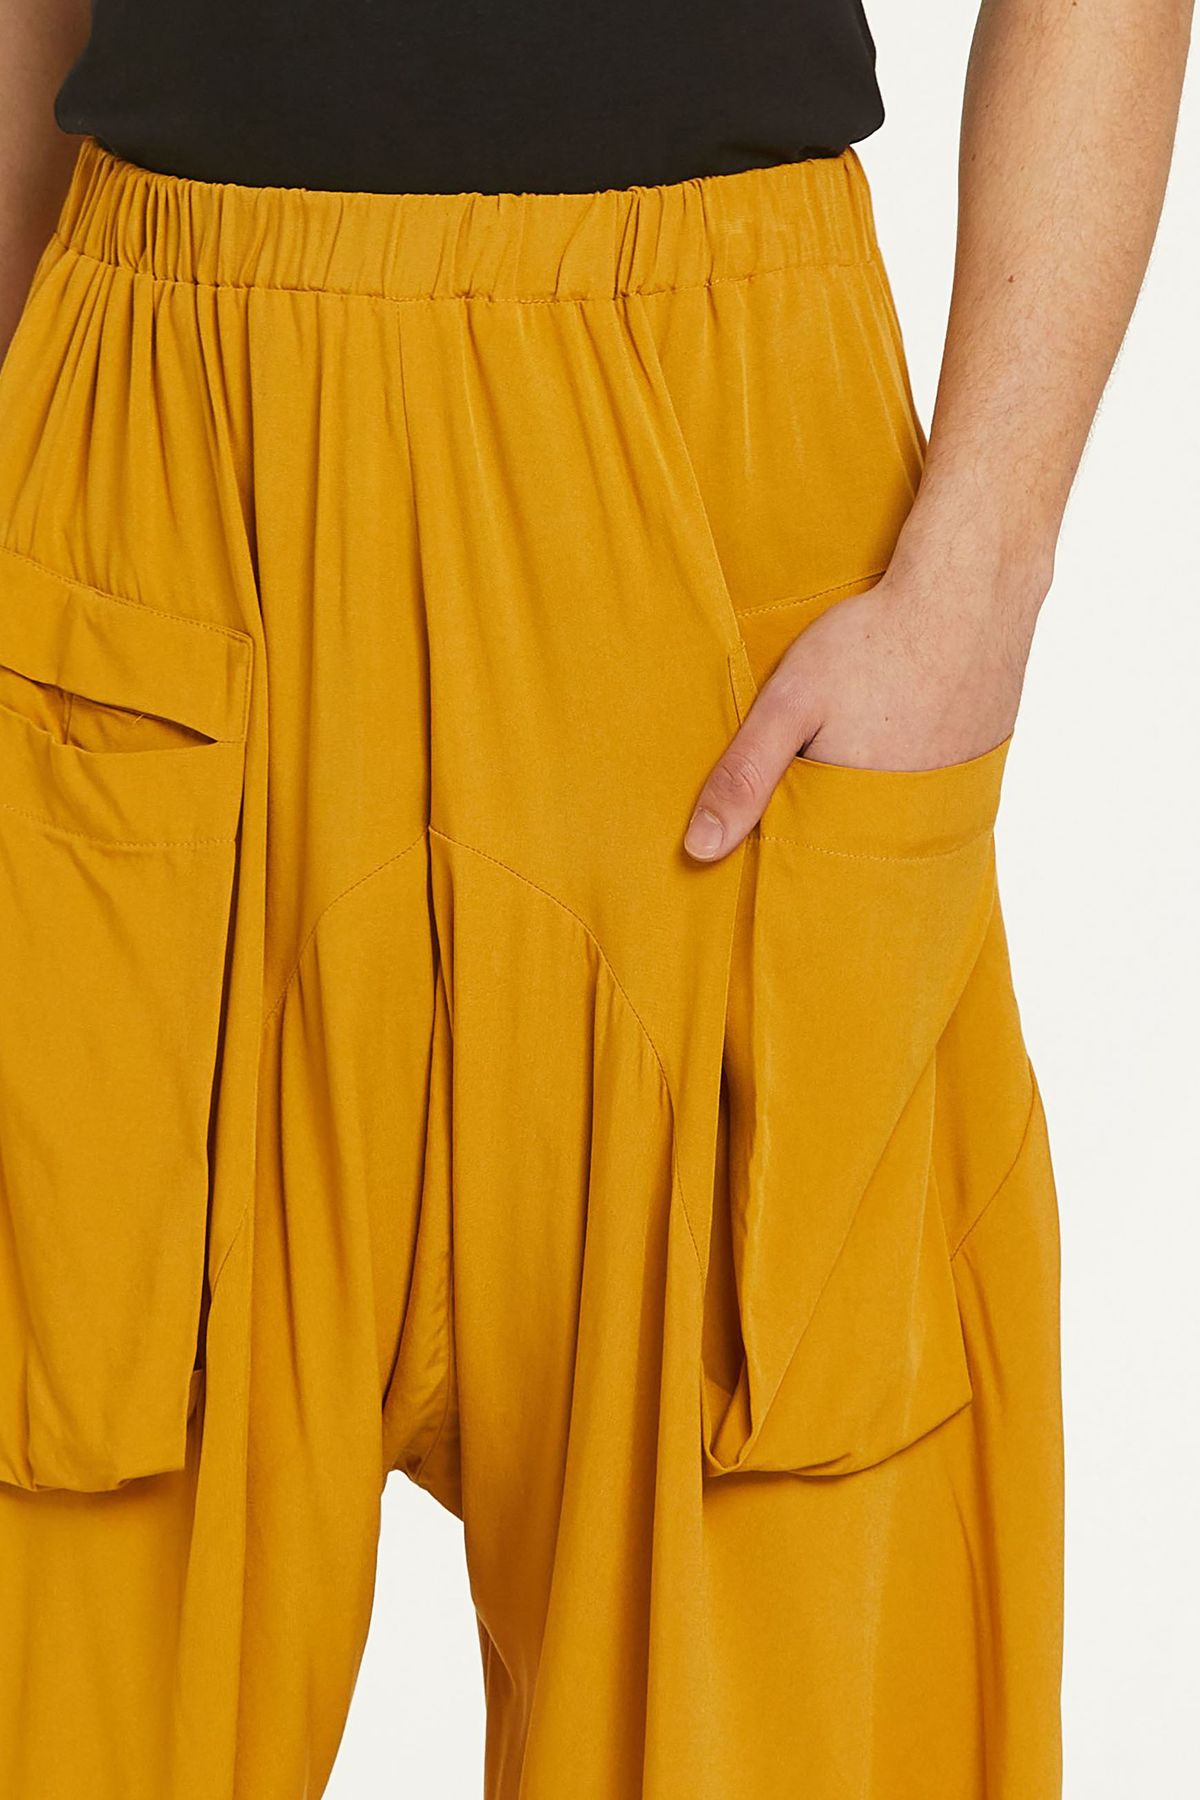 Elastic Waist Harem Style Unisex Pants Yellow